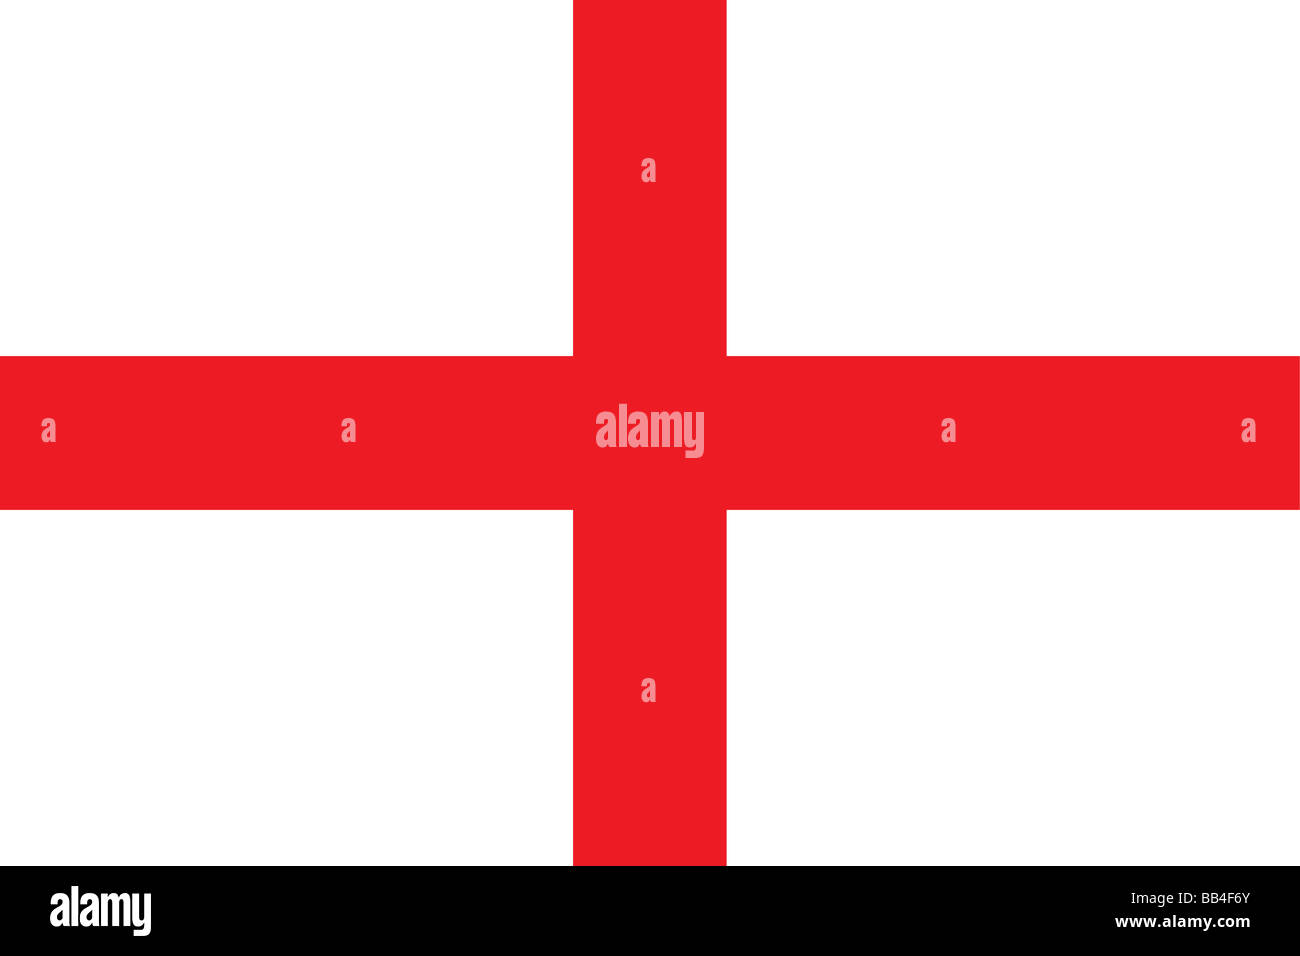 Bandiera dell'Inghilterra, il costituente predominante unità del Regno Unito, che occupa più di metà dell'isola di Gran Bretagna. Foto Stock